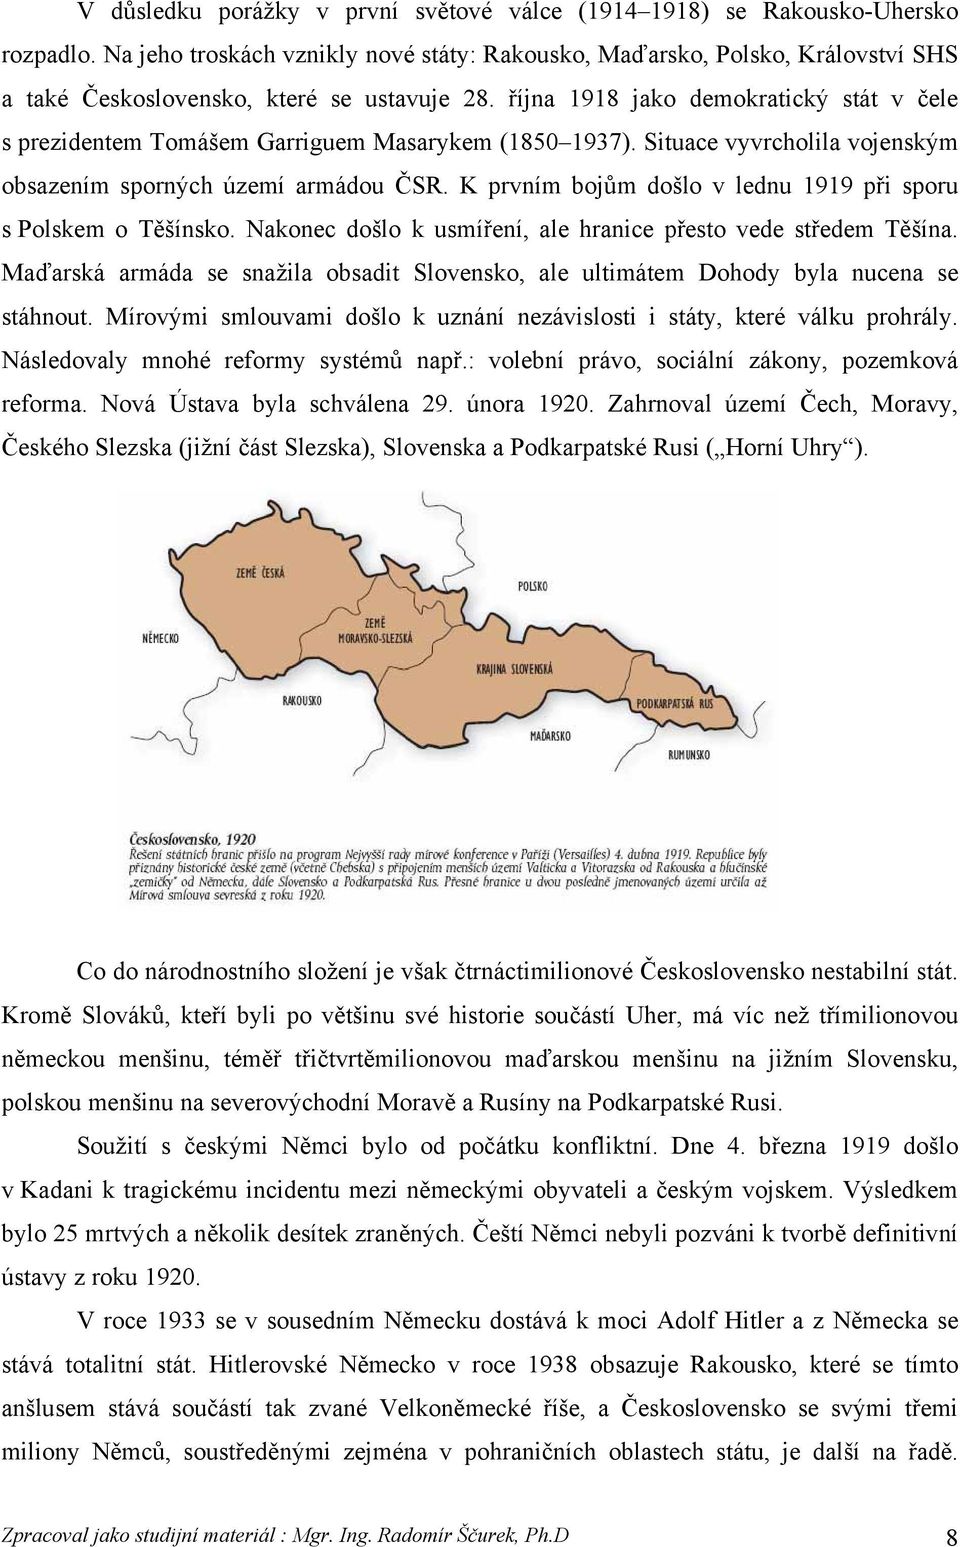 října 1918 jako demokratický stát v čele s prezidentem Tomášem Garriguem Masarykem (1850 1937). Situace vyvrcholila vojenským obsazením sporných území armádou ČSR.